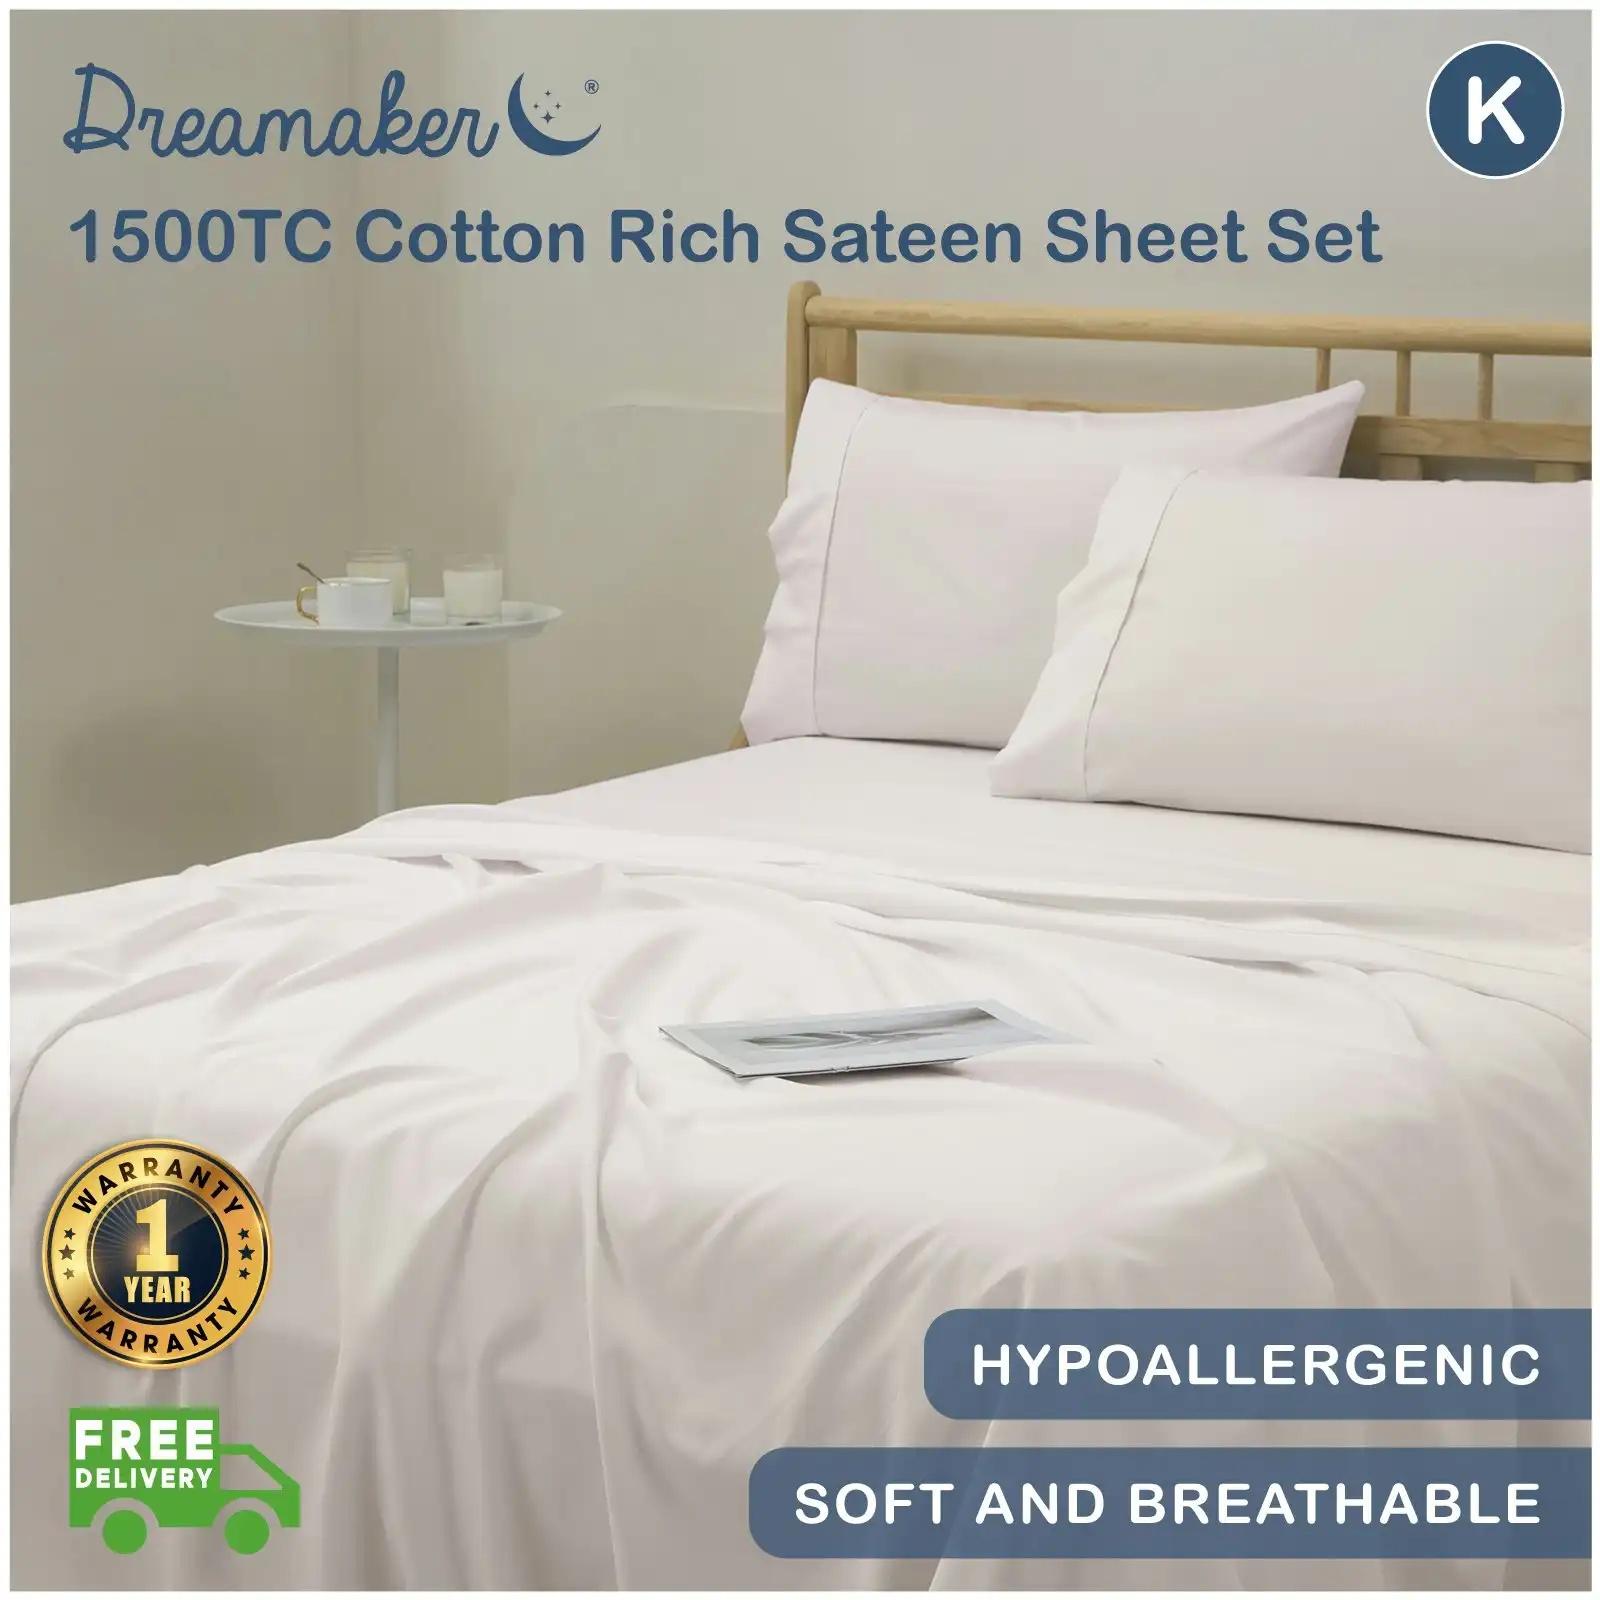 Dreamaker 1500TC Cotton Rich Sateen Sheet Set Golden Latte King Bed